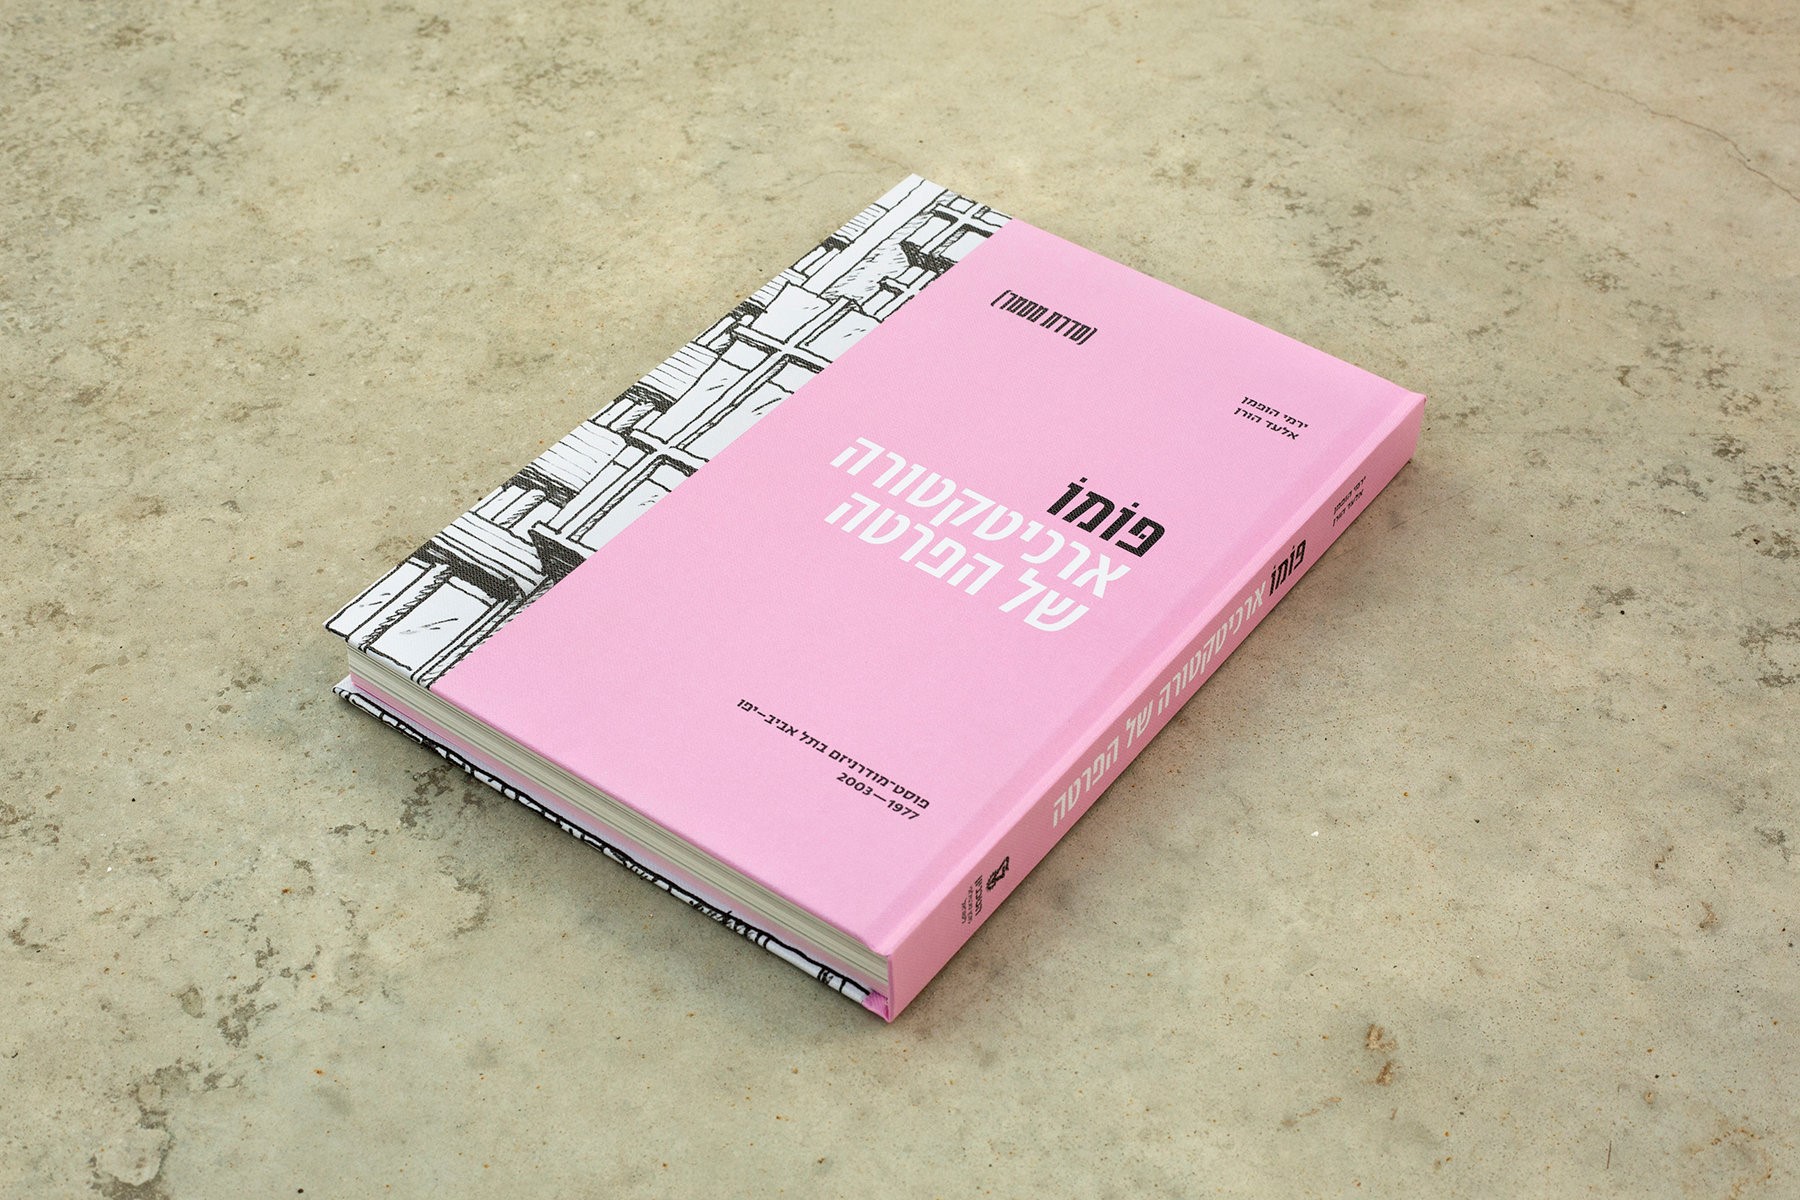 ספר חדש: “ת”א-יפו של פּוֹמוֹ” – אדריכלות של קפיטליזם והפרטה